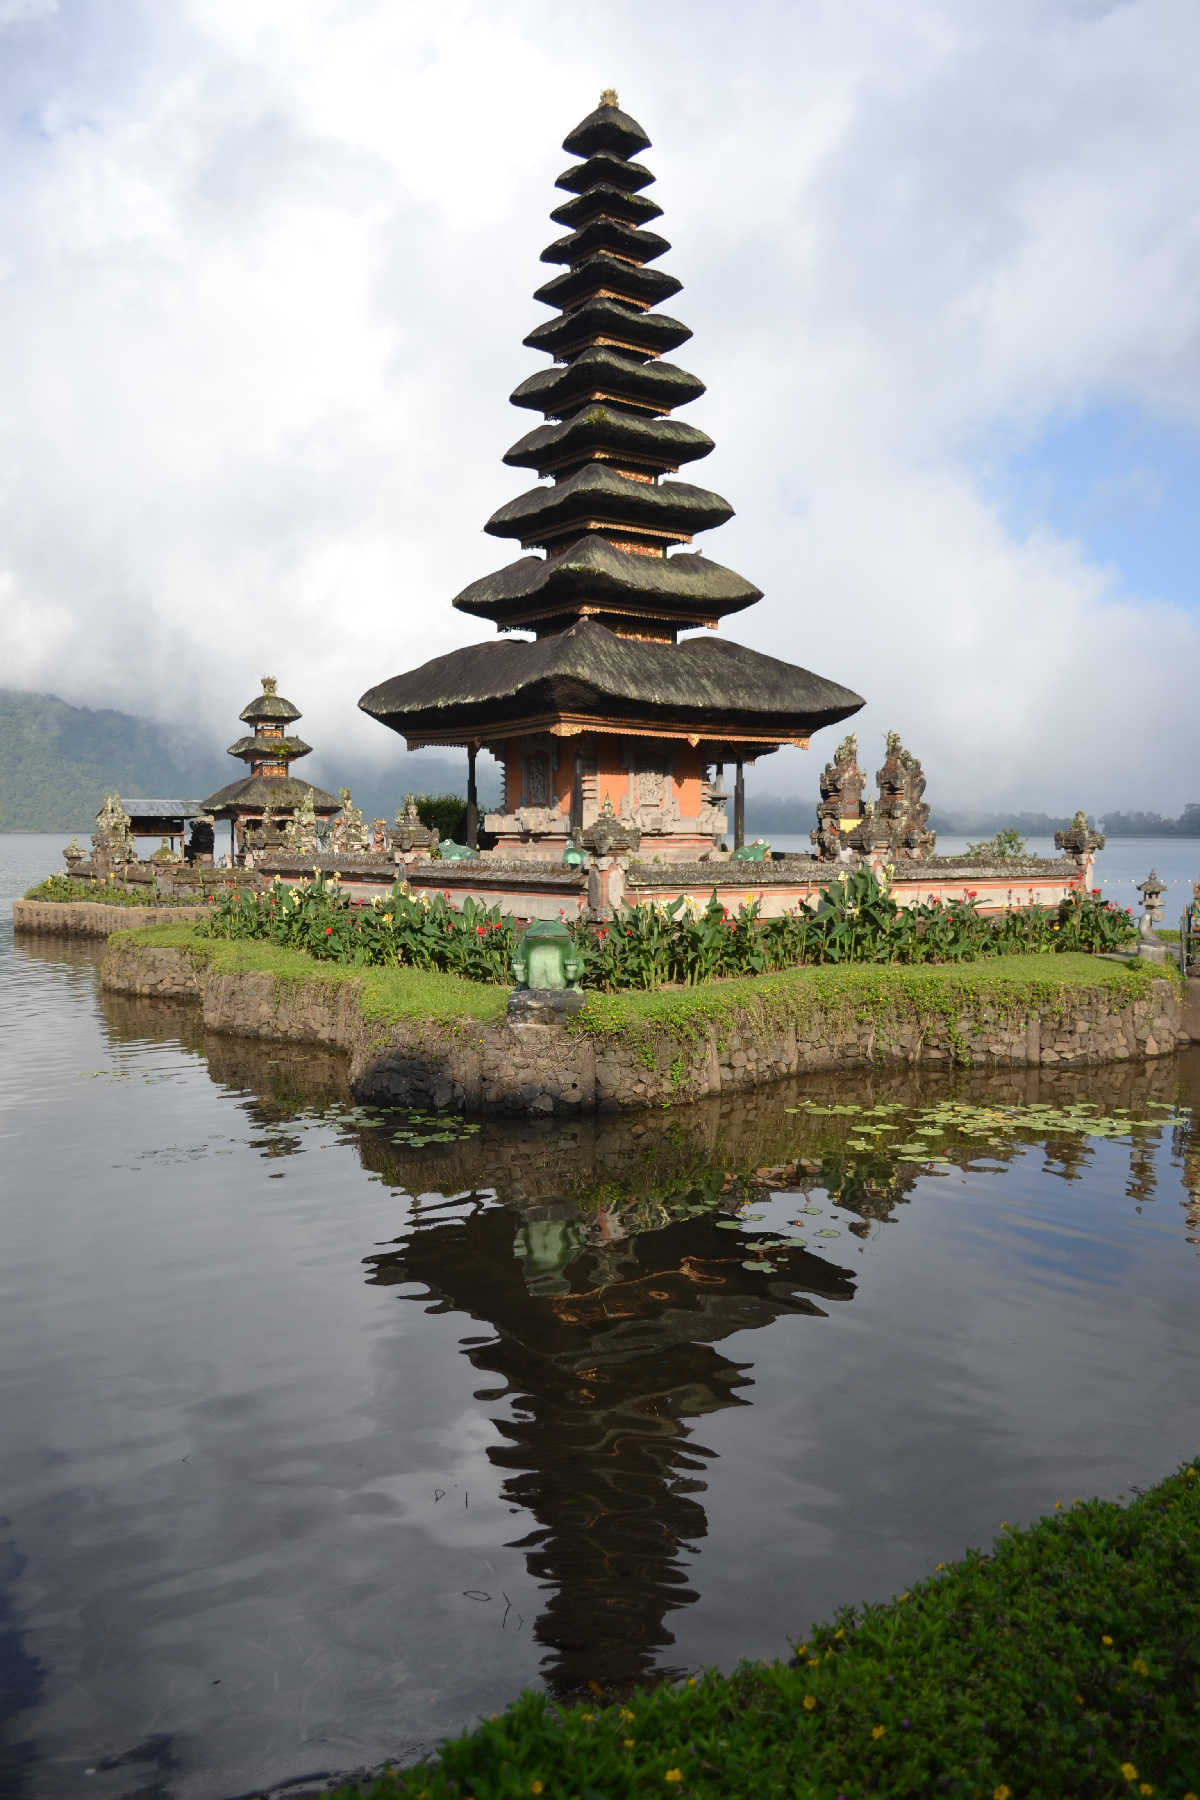 struttura classica dei templi a Bali